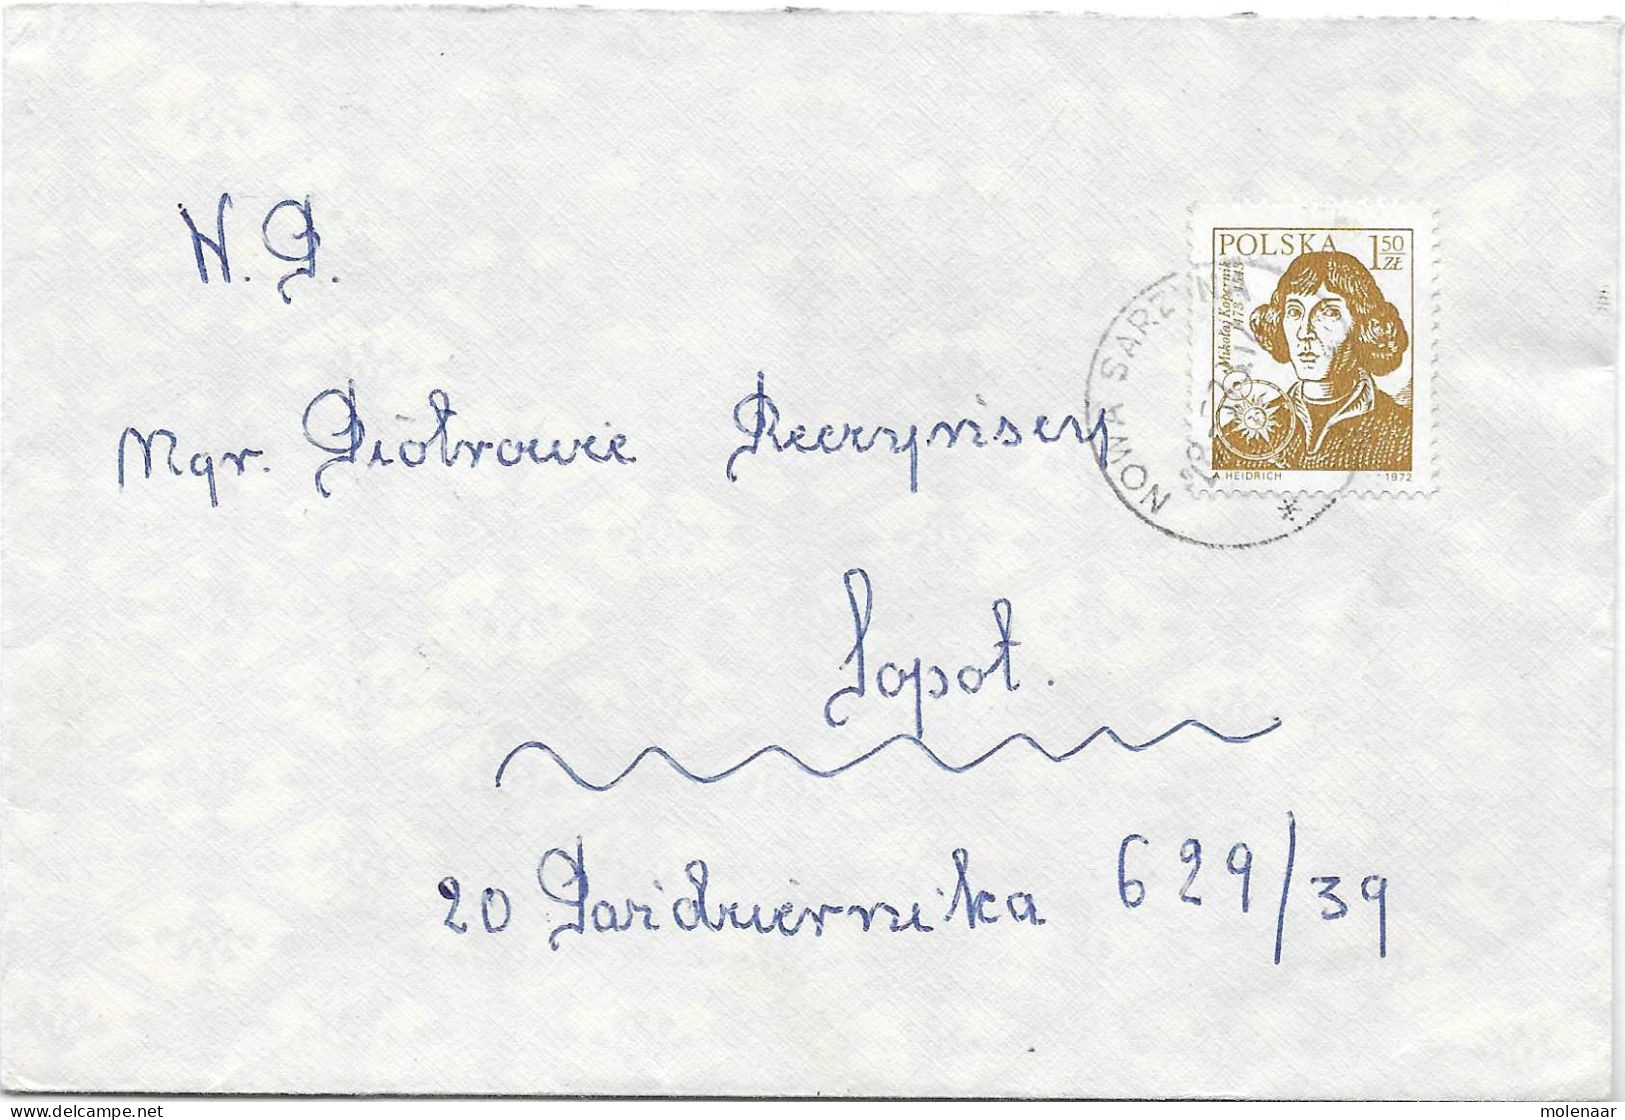 Postzegels > Europa > Polen > 1944-.... Republiek > 1971-80 >brief Met No. 2228 (17106) - Covers & Documents